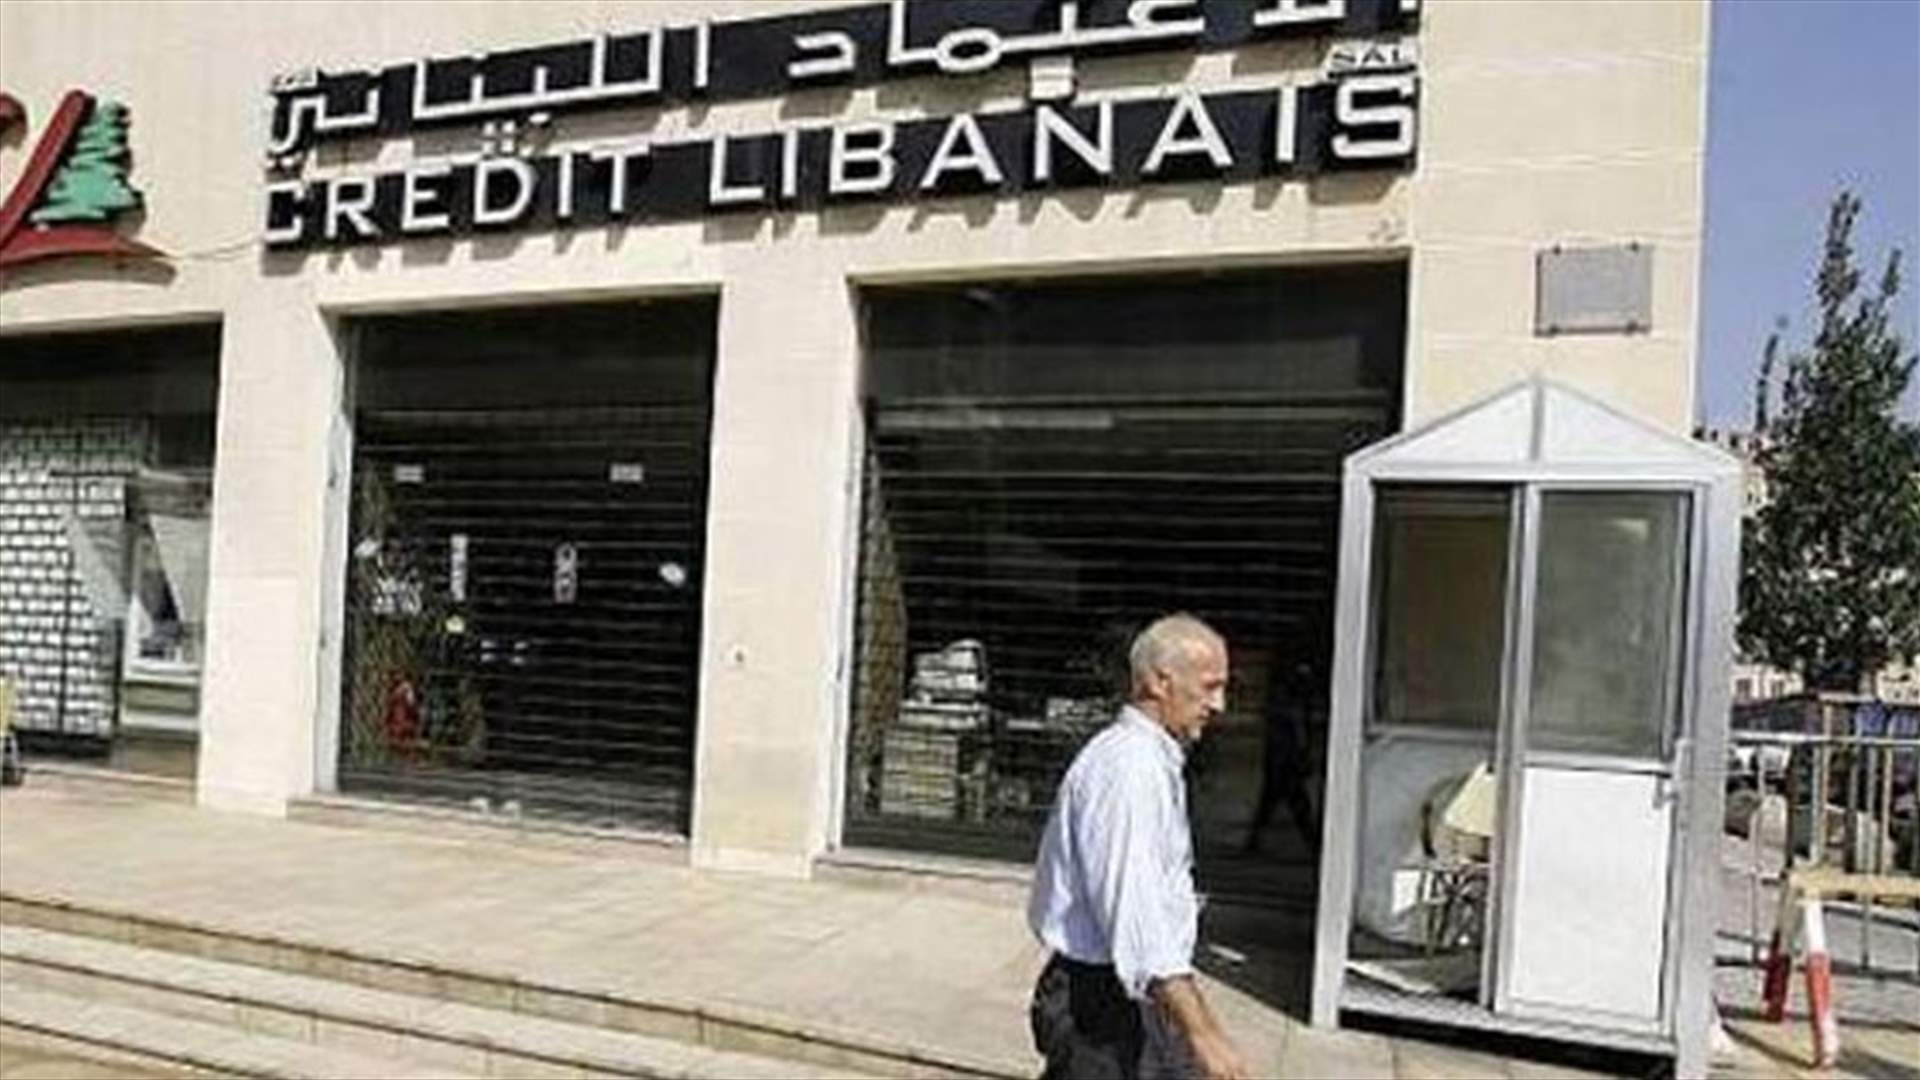 4 ملثمين سرقوا بنك &quot;credit libanais&quot; في المكلس 